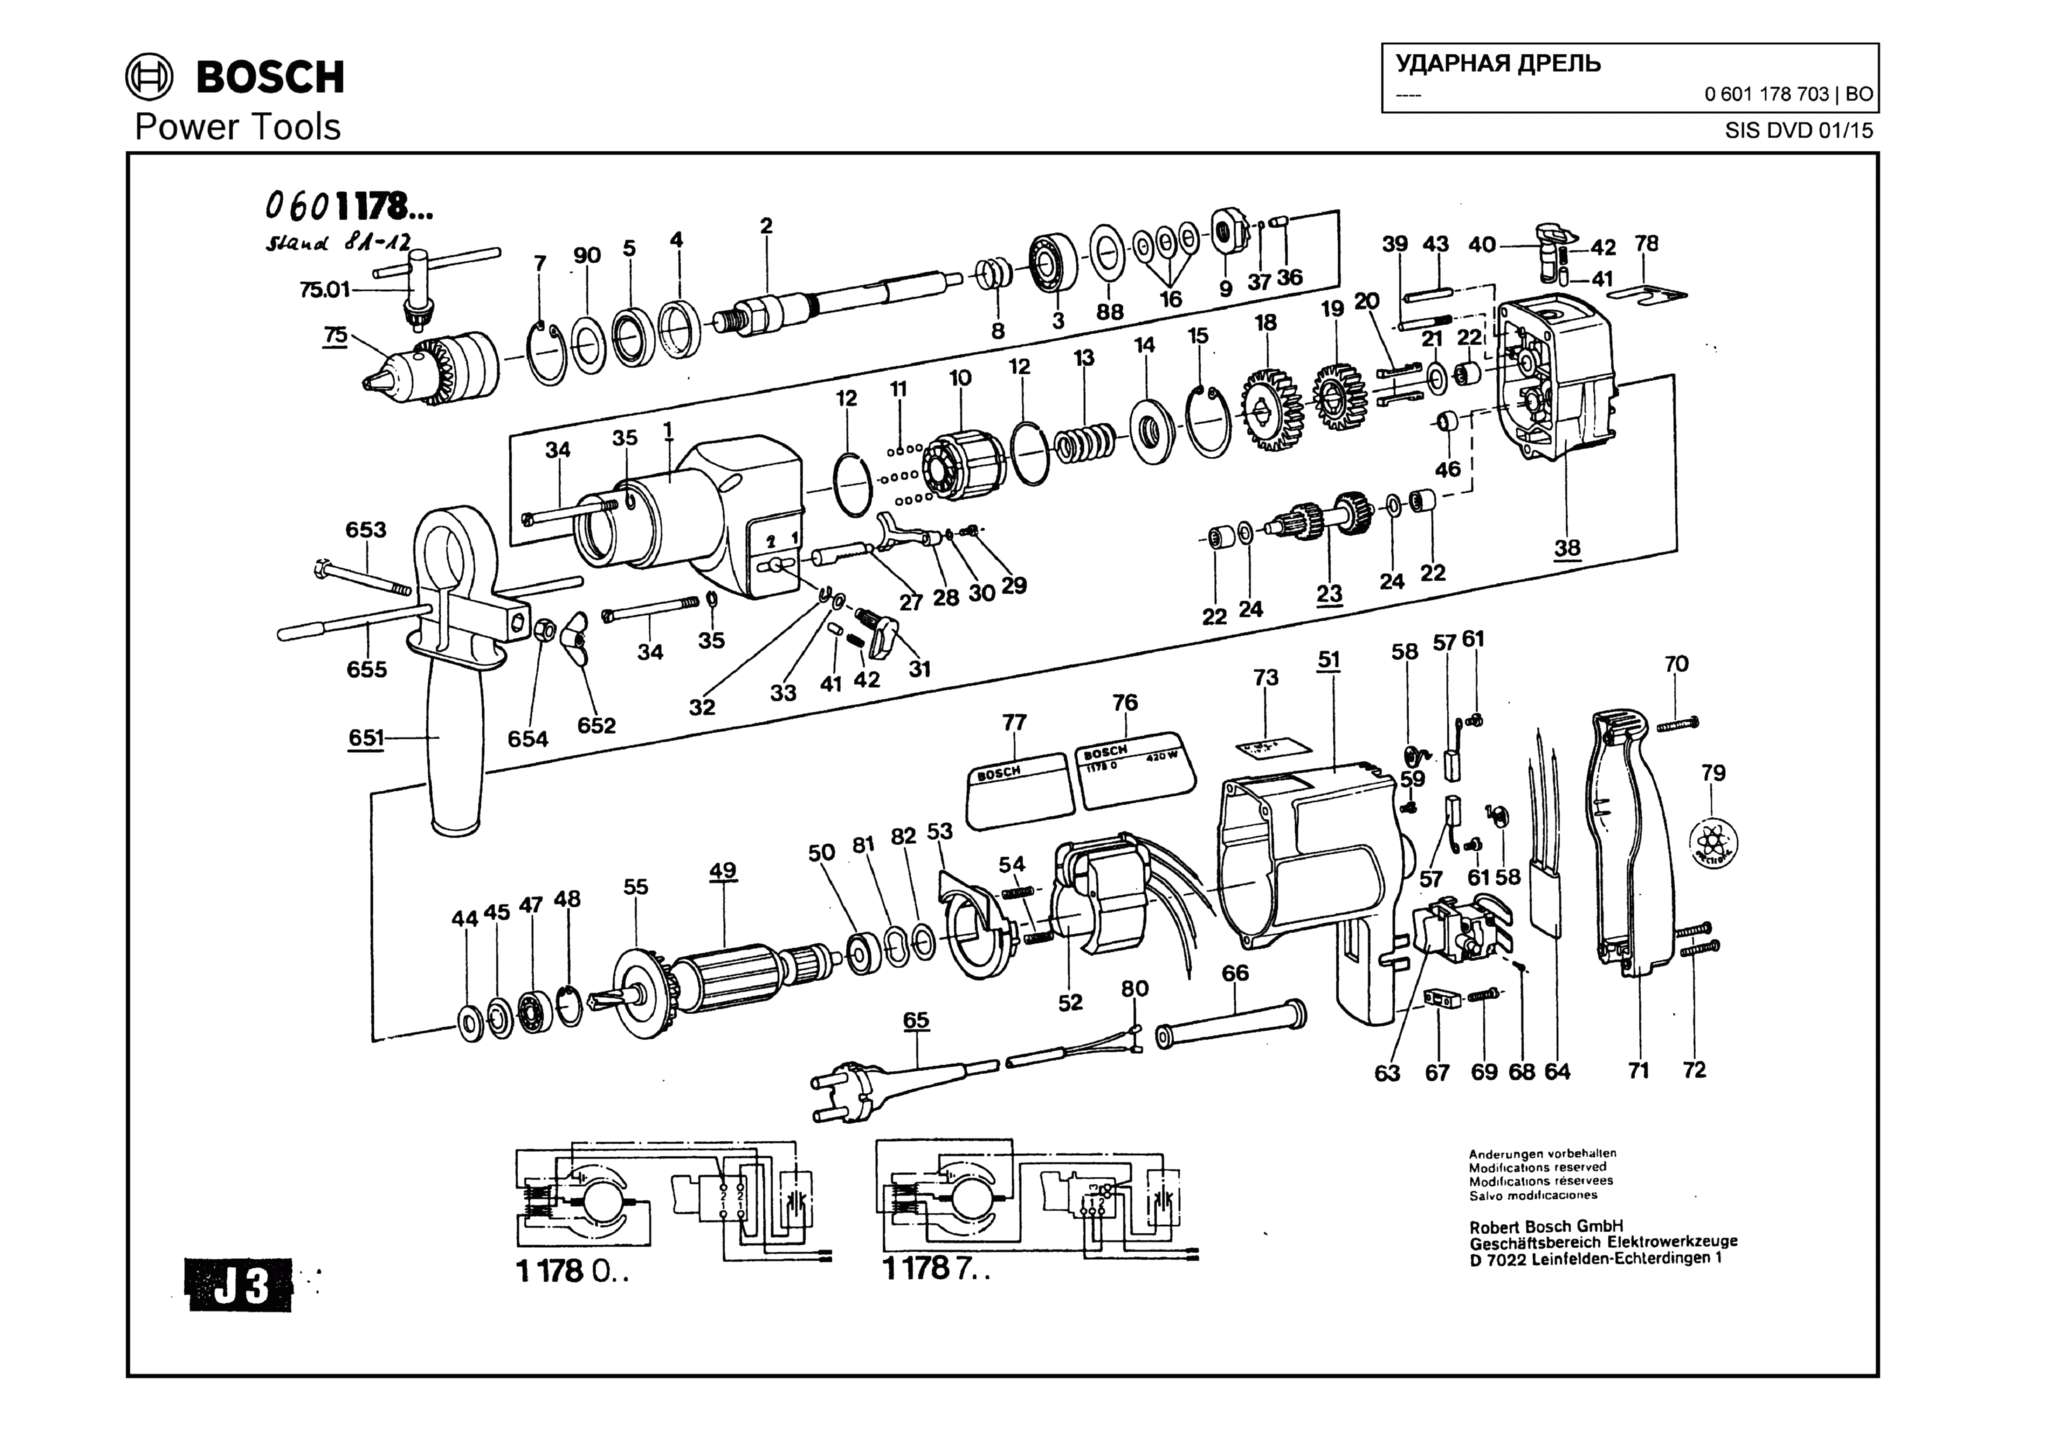 Запчасти, схема и деталировка Bosch (ТИП 0601178703)